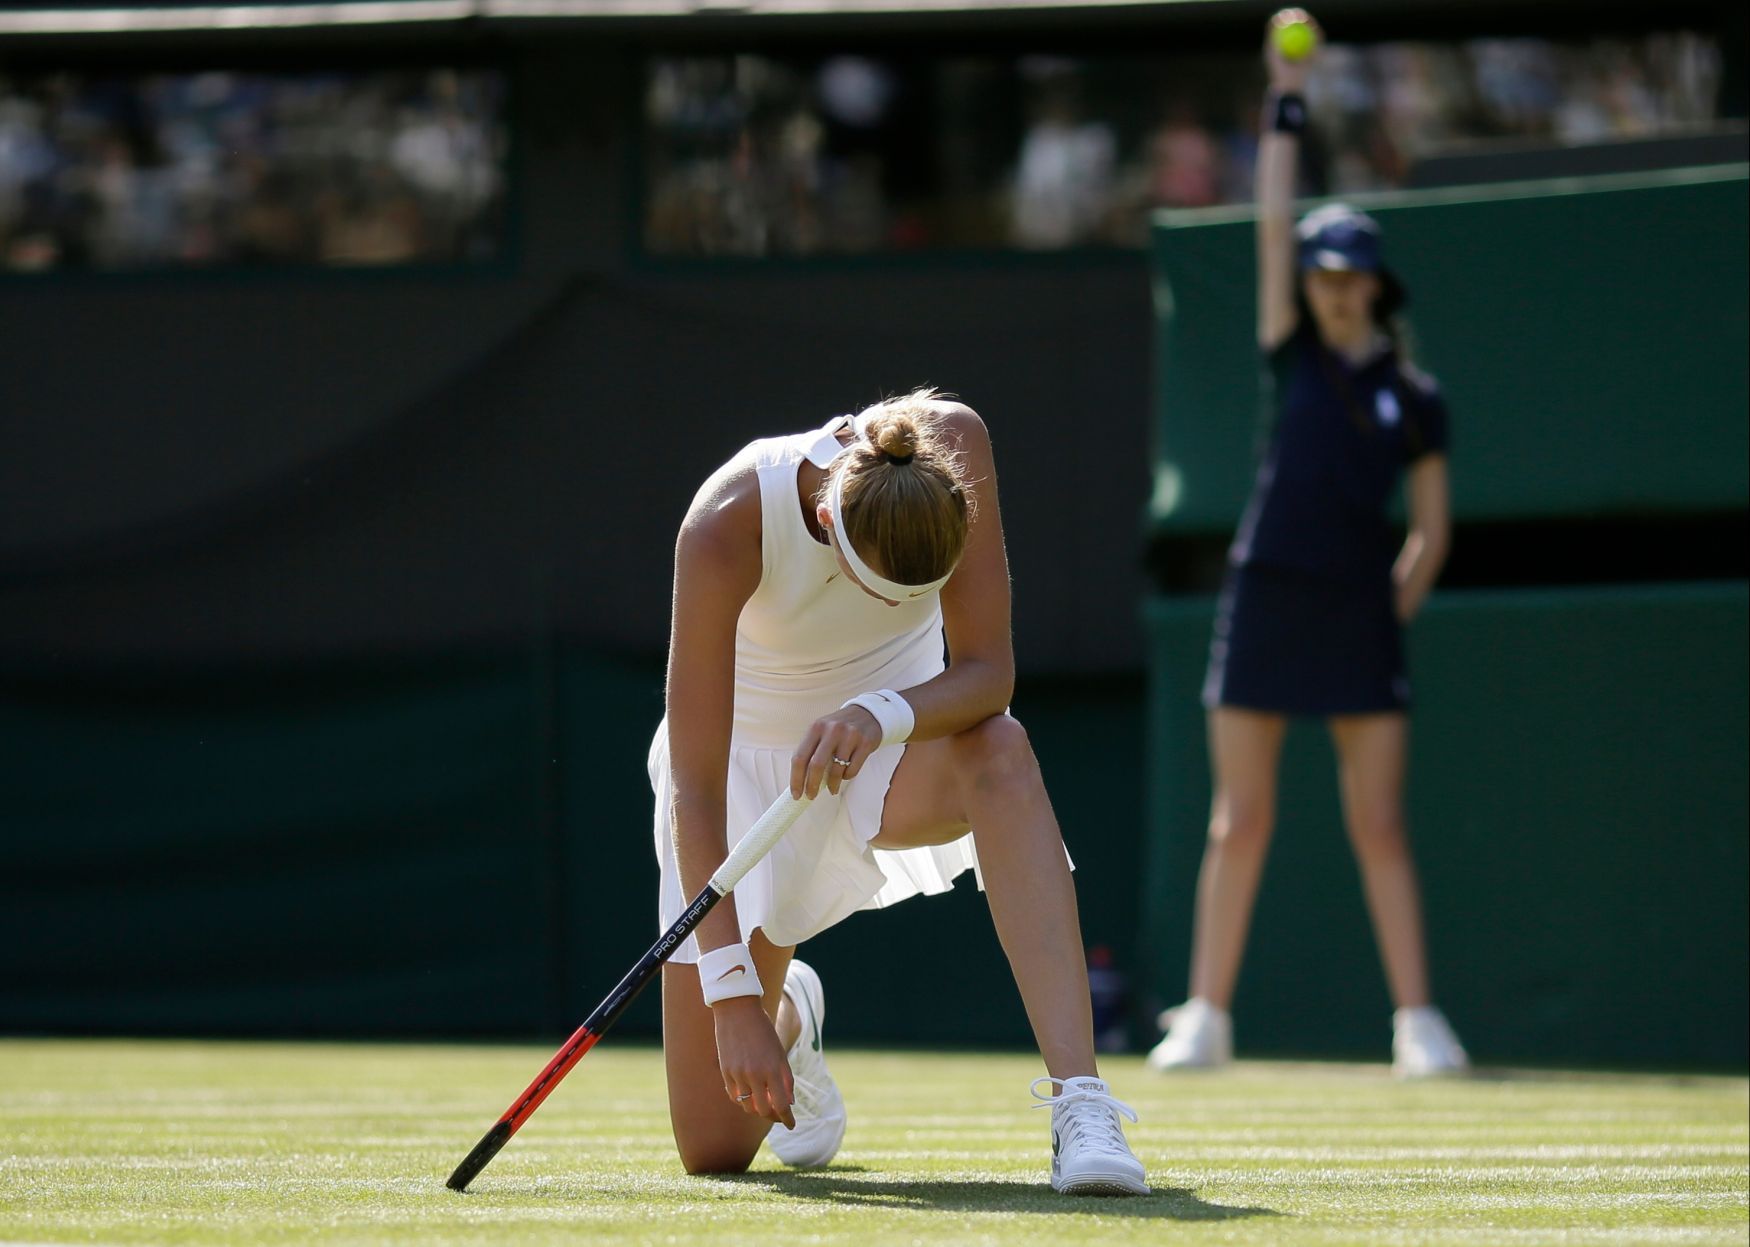 Wimbledon 2018: Petra Kvitová